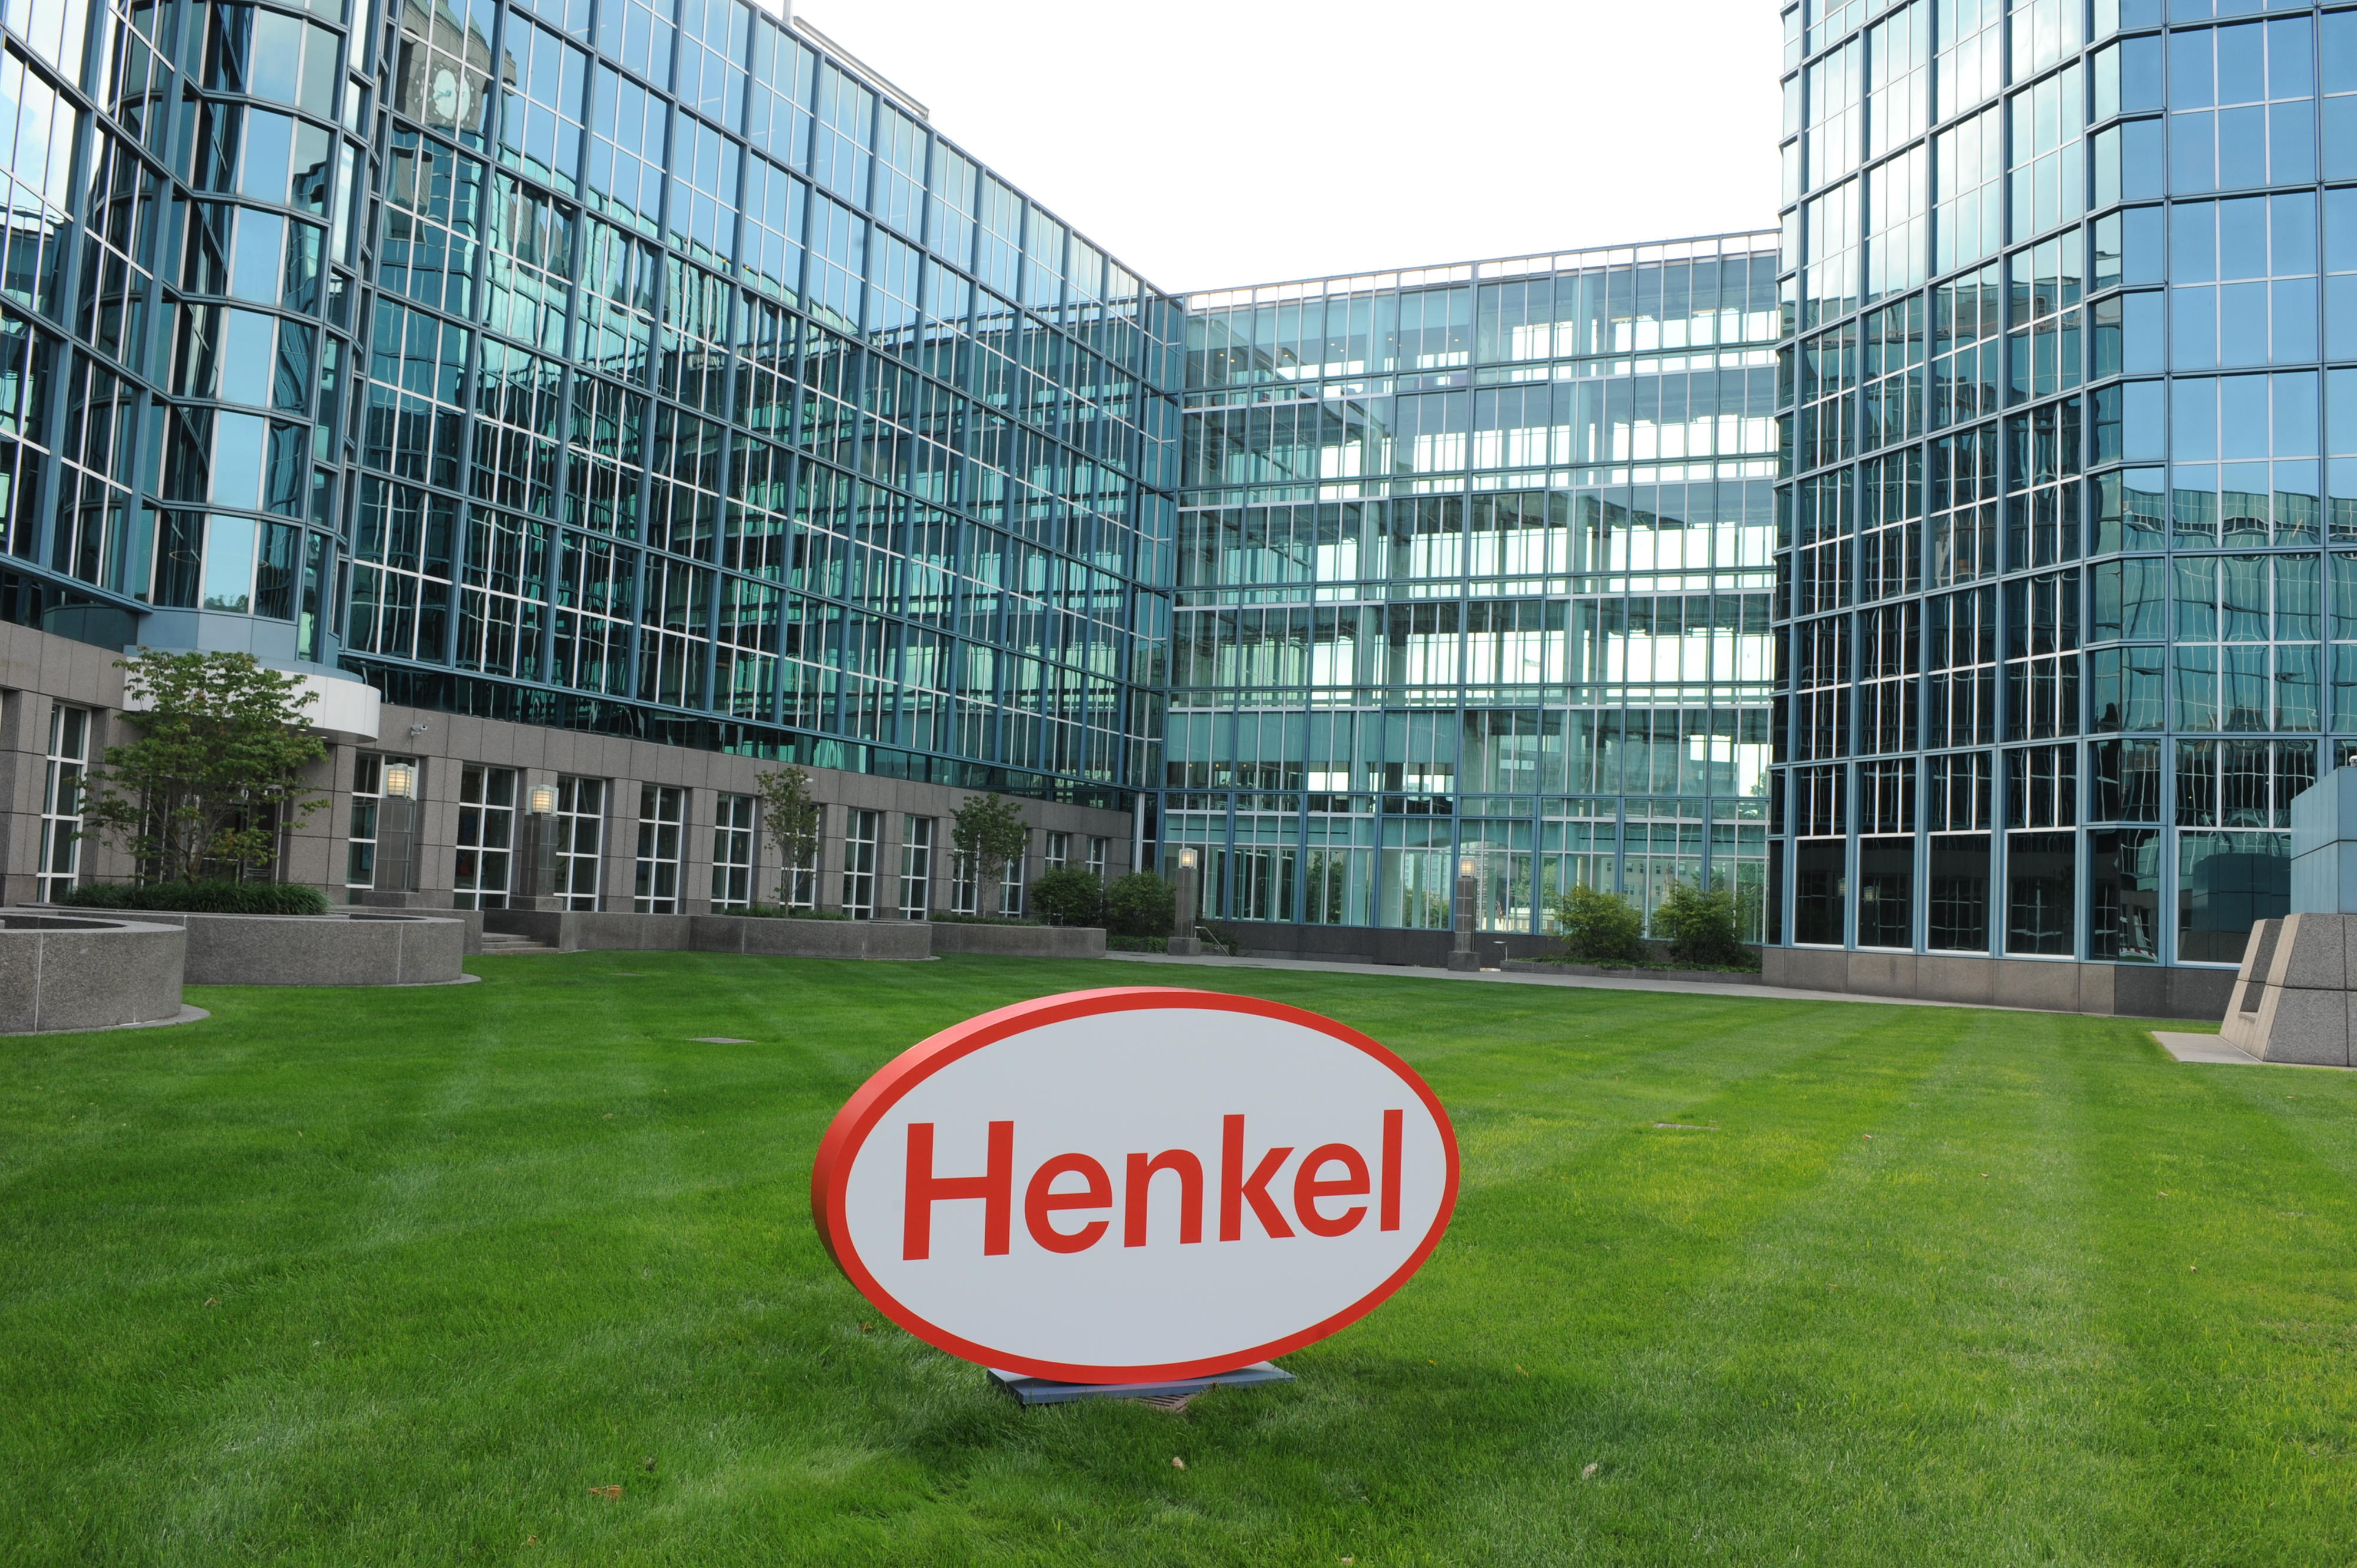 Henkel celebration in Stamford, CT. on Thursday 9.7.17